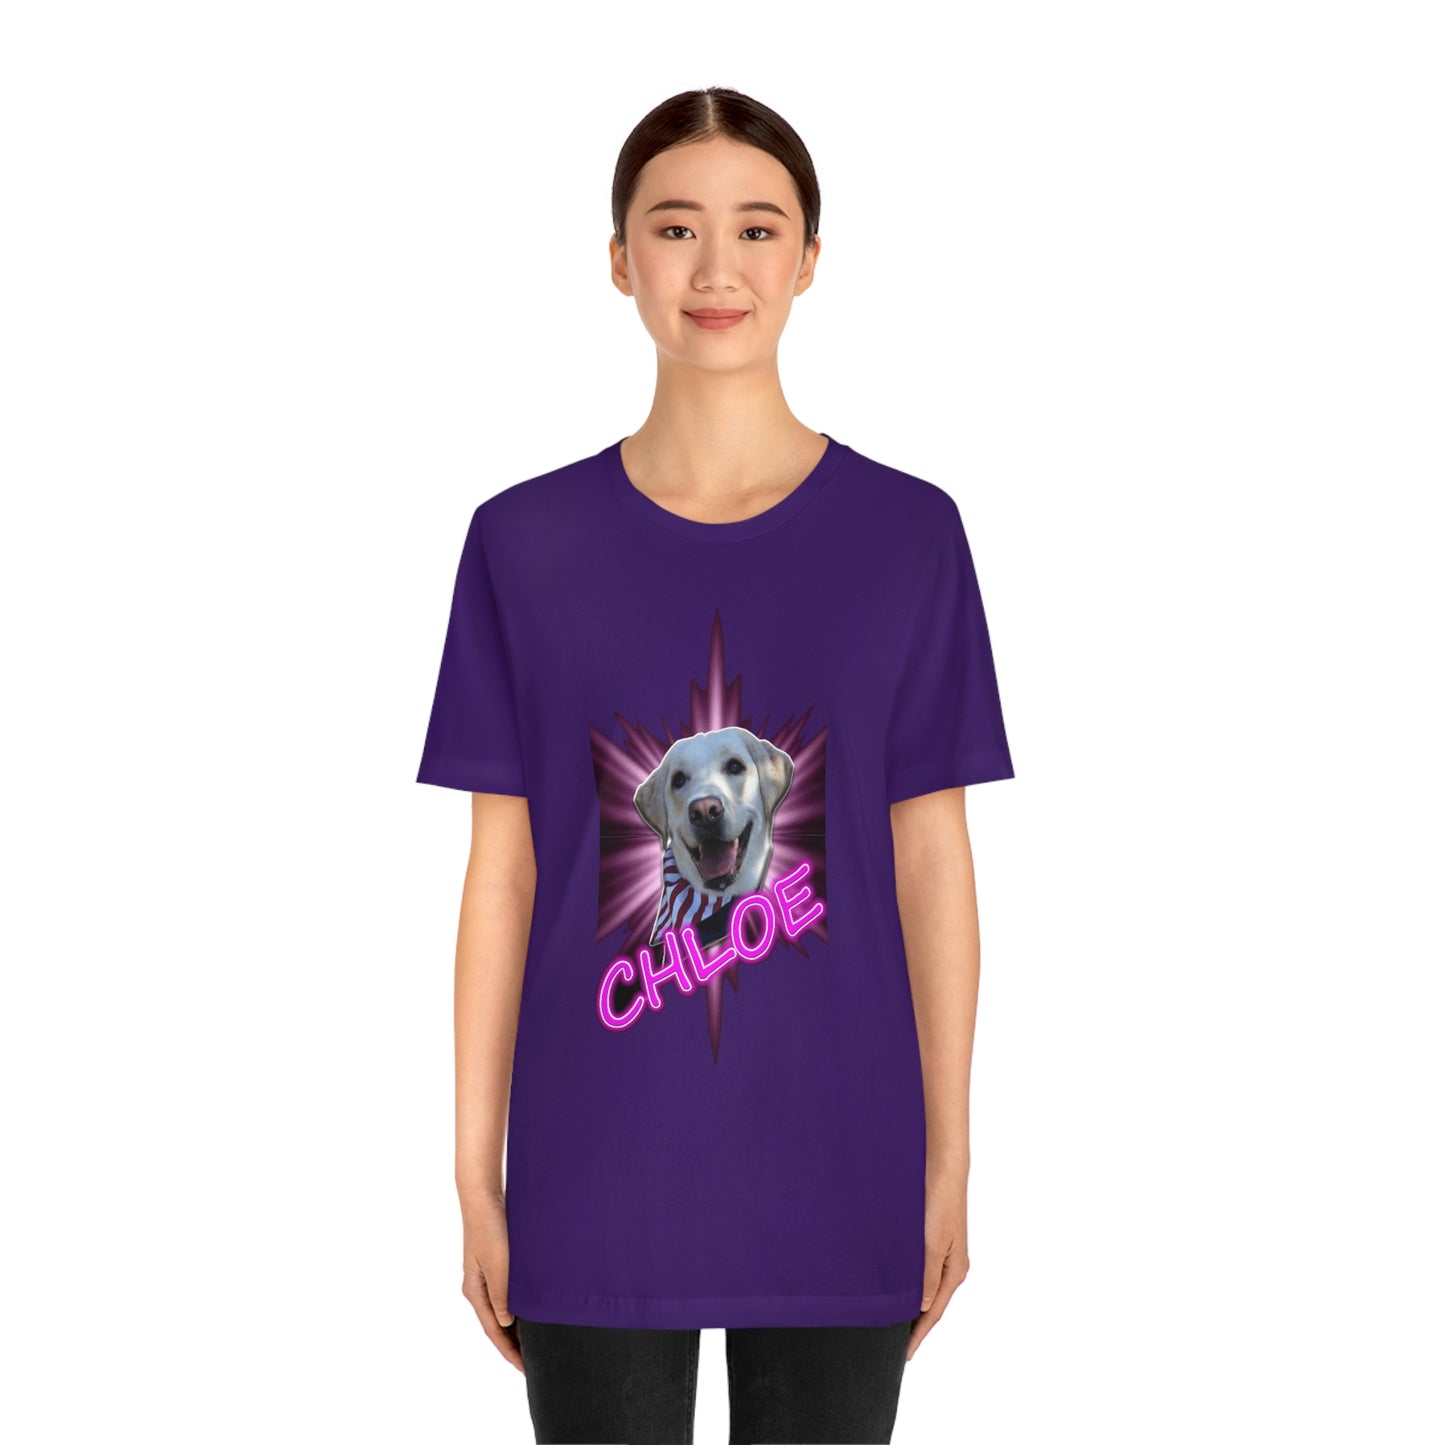 Dj Ditter Chloe Unisex T-Shirt